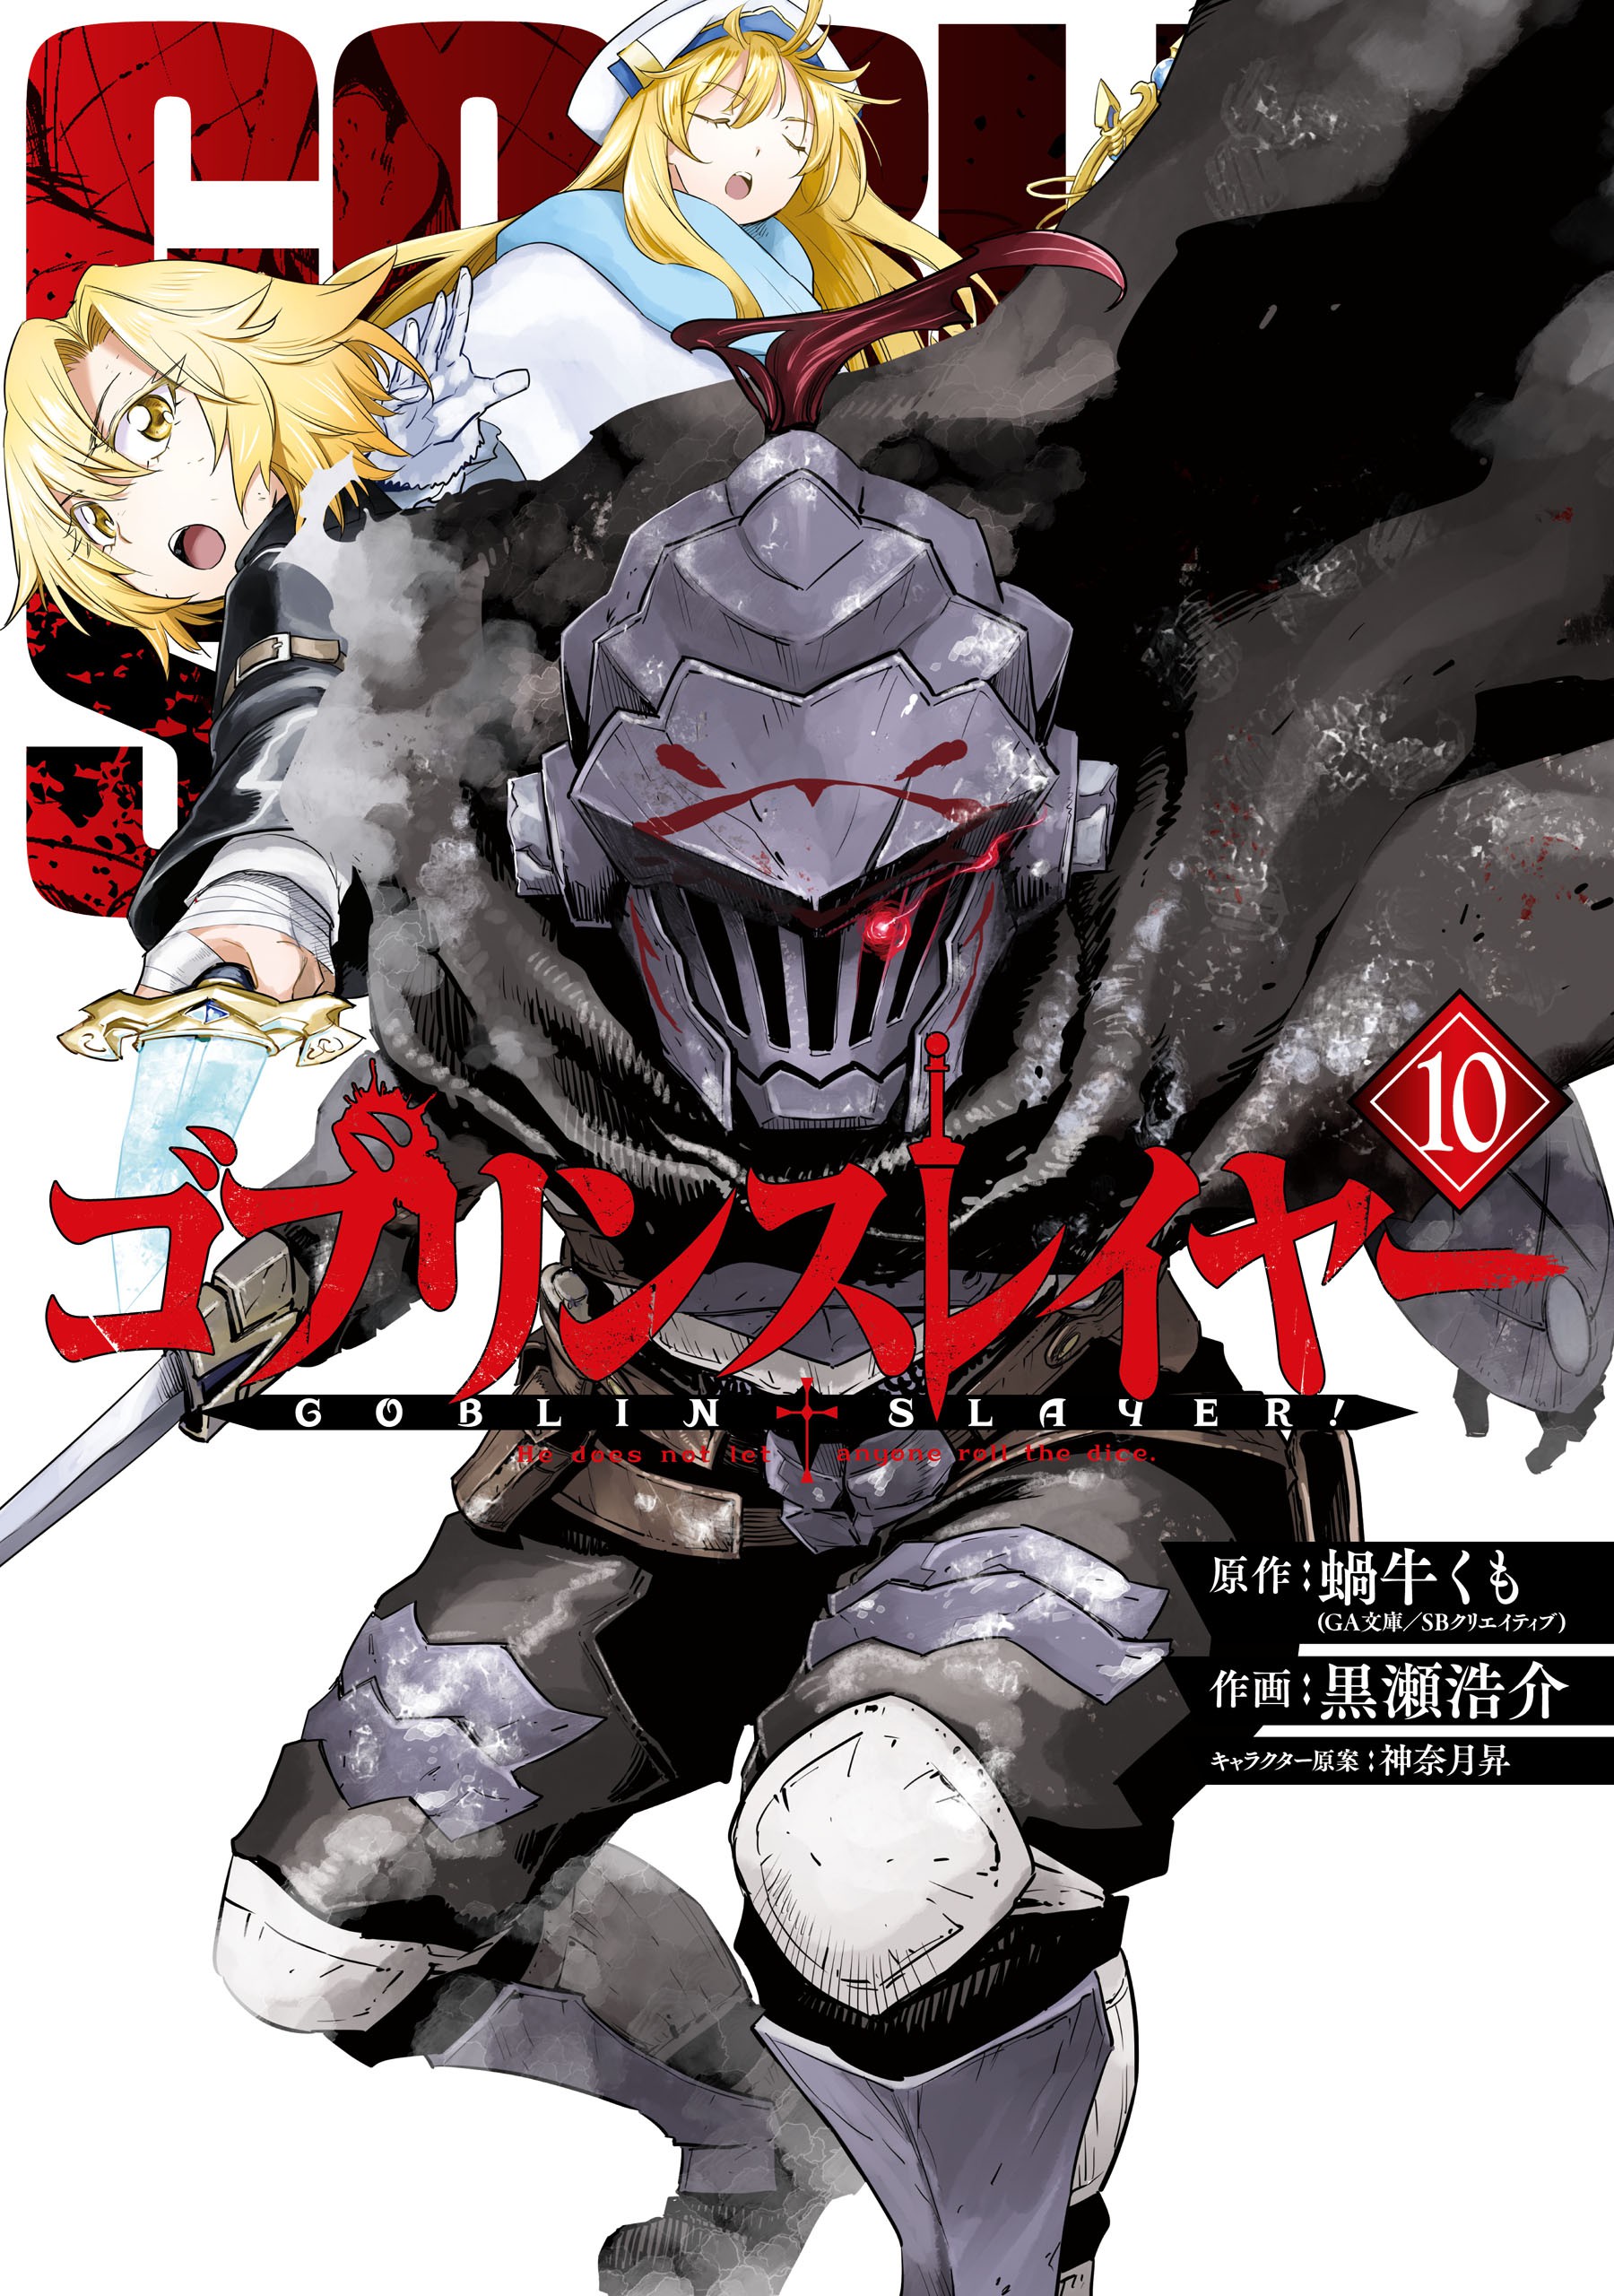 Goblin Slayer (ゴブリンスレイヤー Goburin Sureiyā) é uma série de light novel d